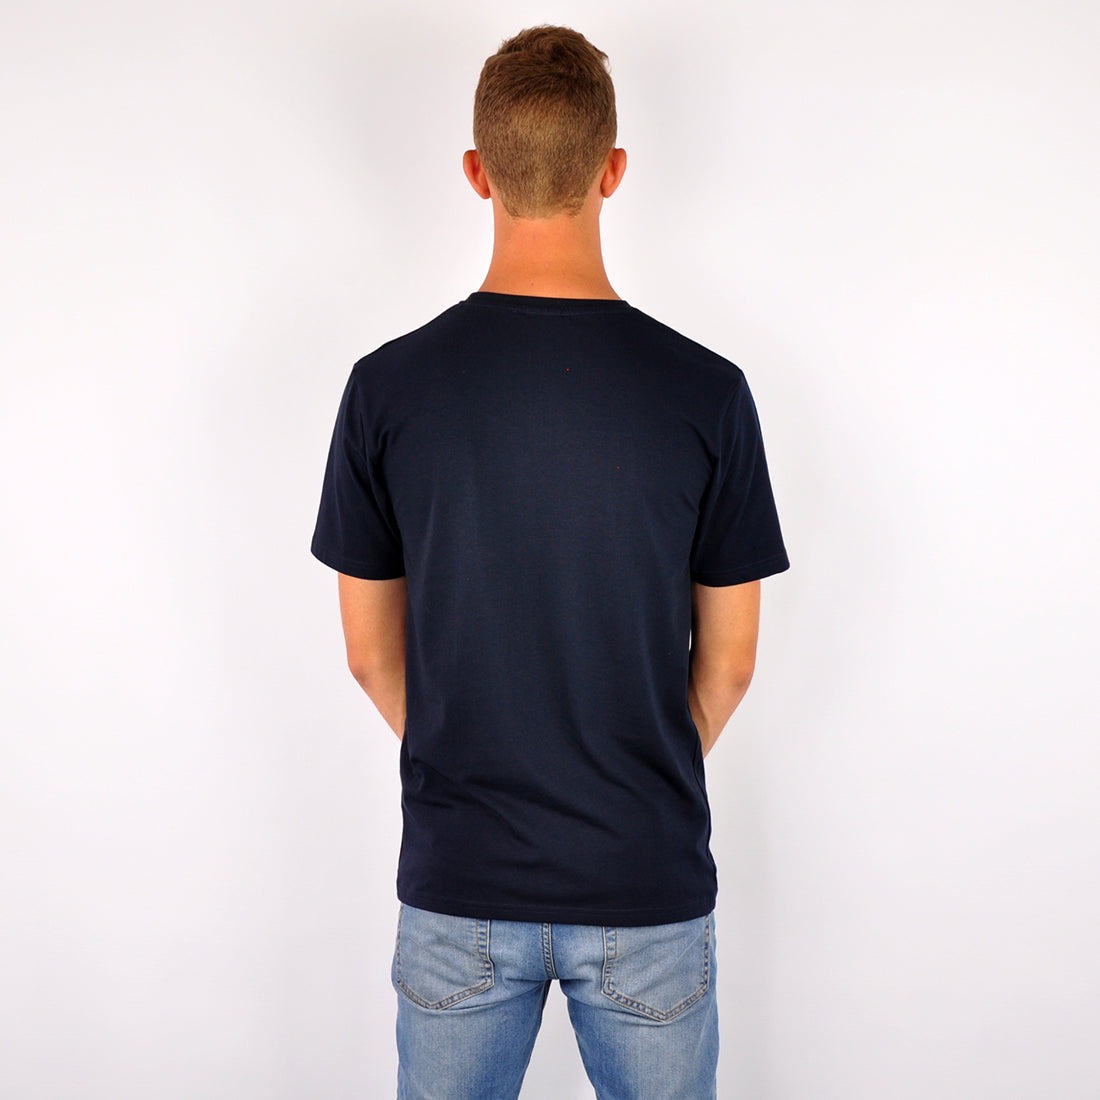 David №5 | Tailliert geschnittenes T-Shirt